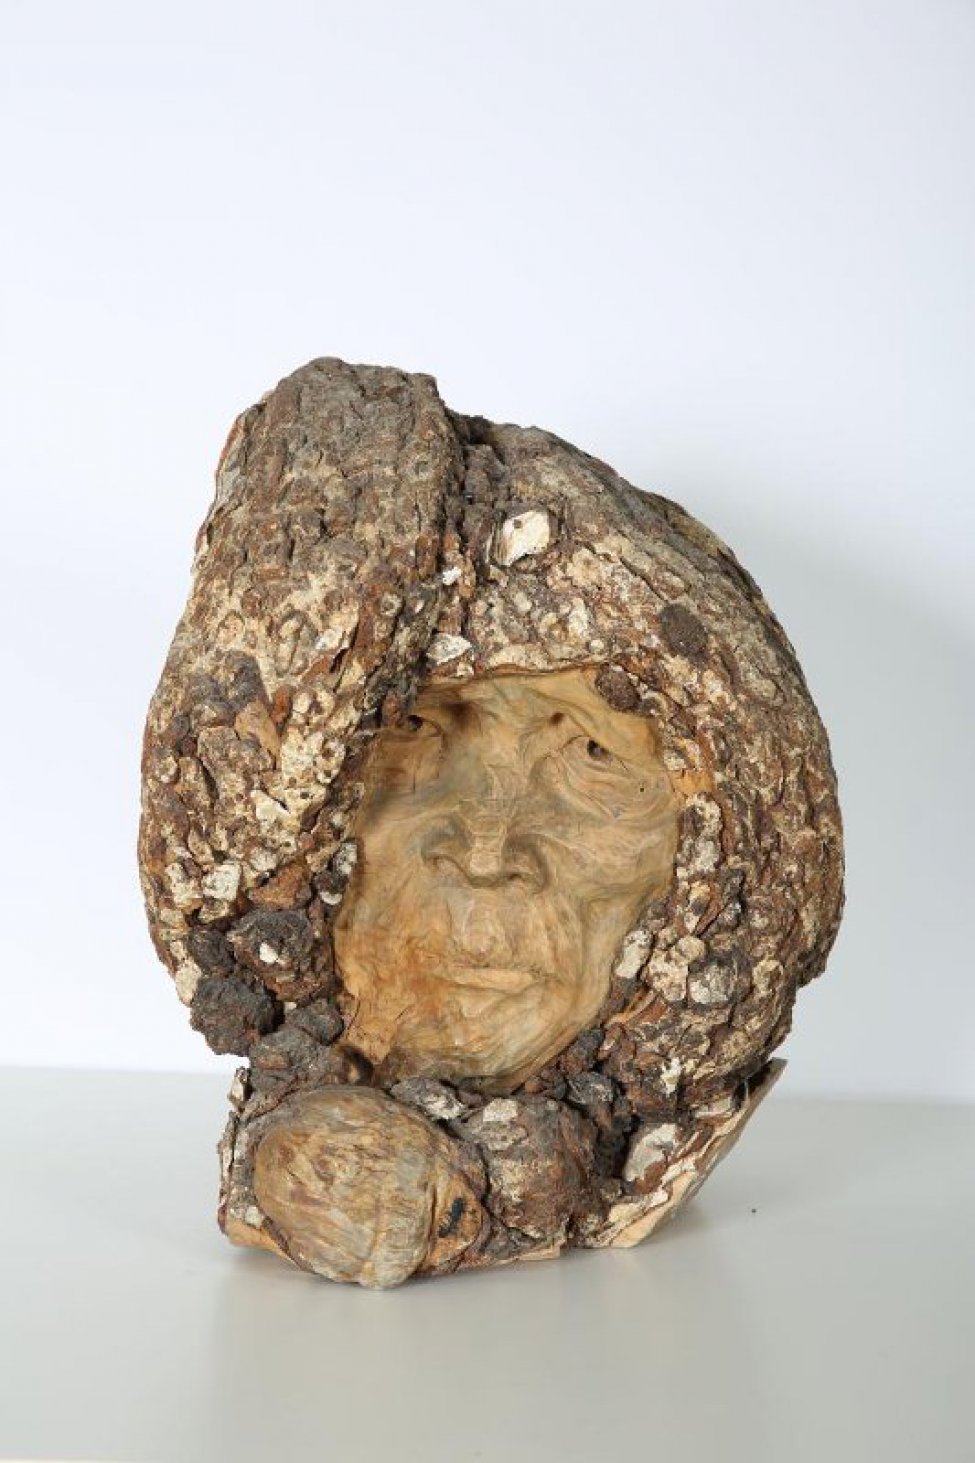 Скульптурное изображение мужской головы в меховом капюшоне (древесная кора). Лицо (дерево) скуластое, с впалыми щеками. Глаза глубоко посажены, широкие ноздри, тонкие губы плотно сжаты.